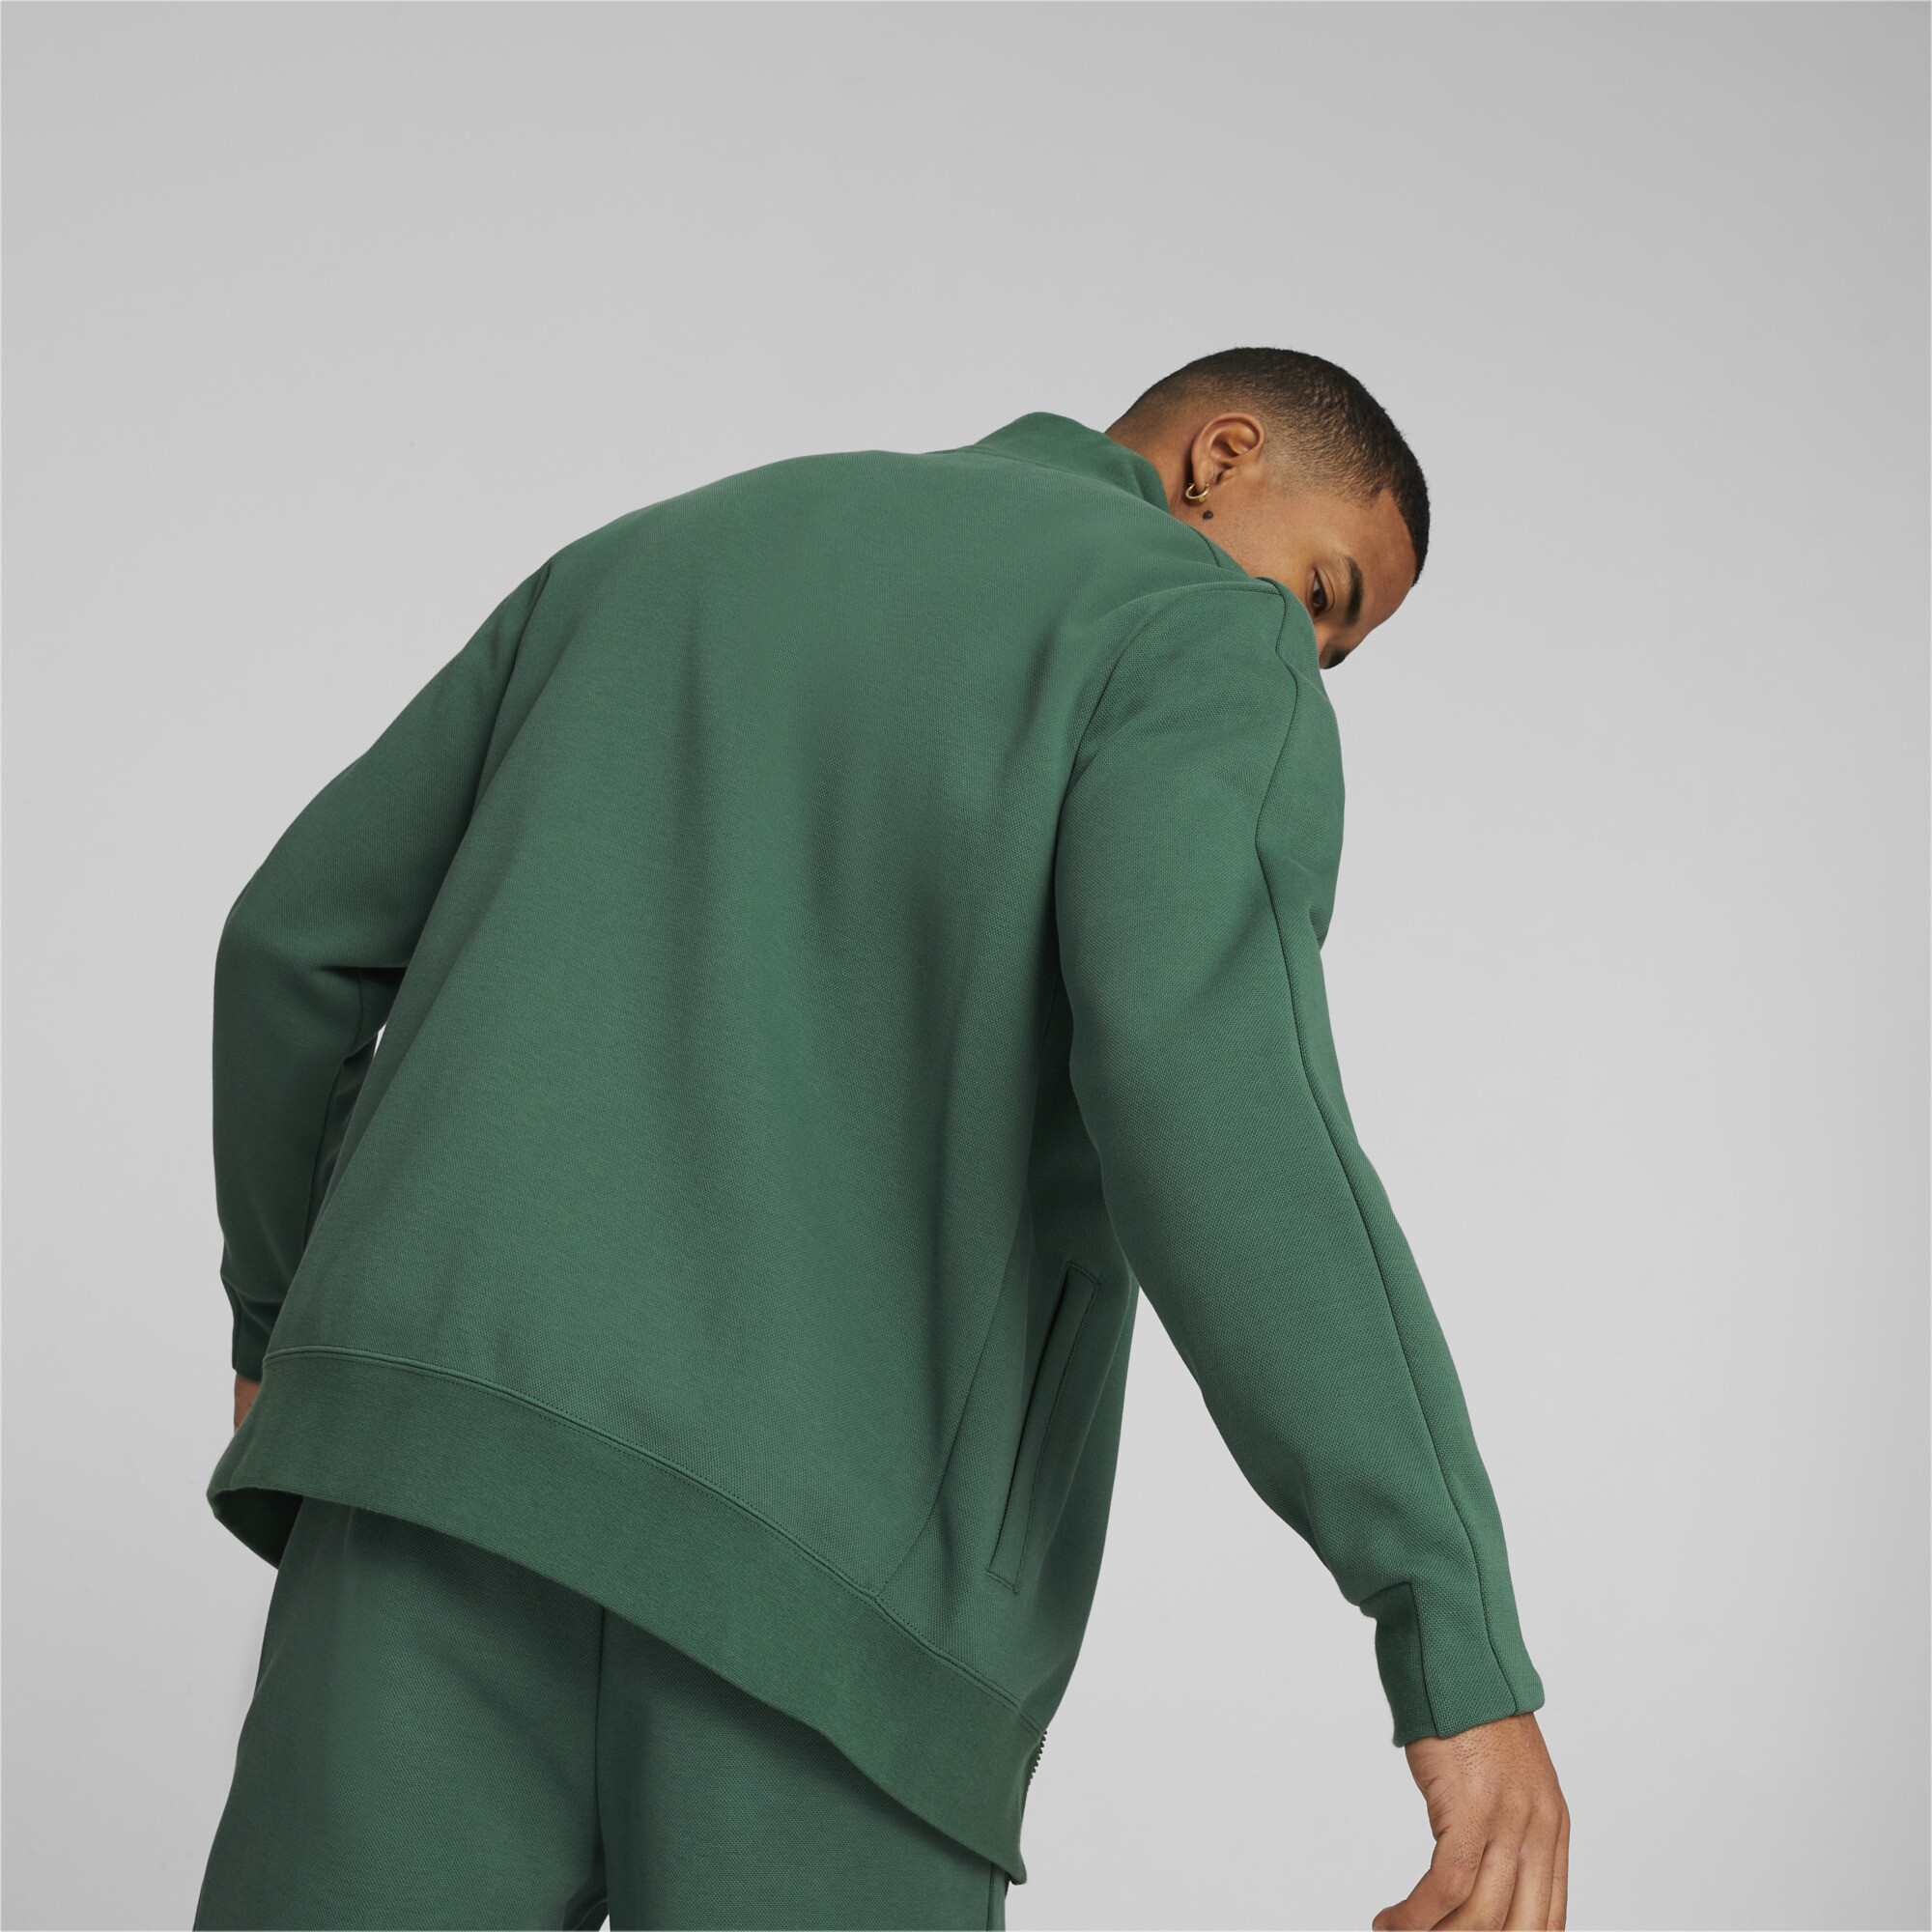 Men's PUMA T7 Track Jacket Men In 40 - Green, Size Medium